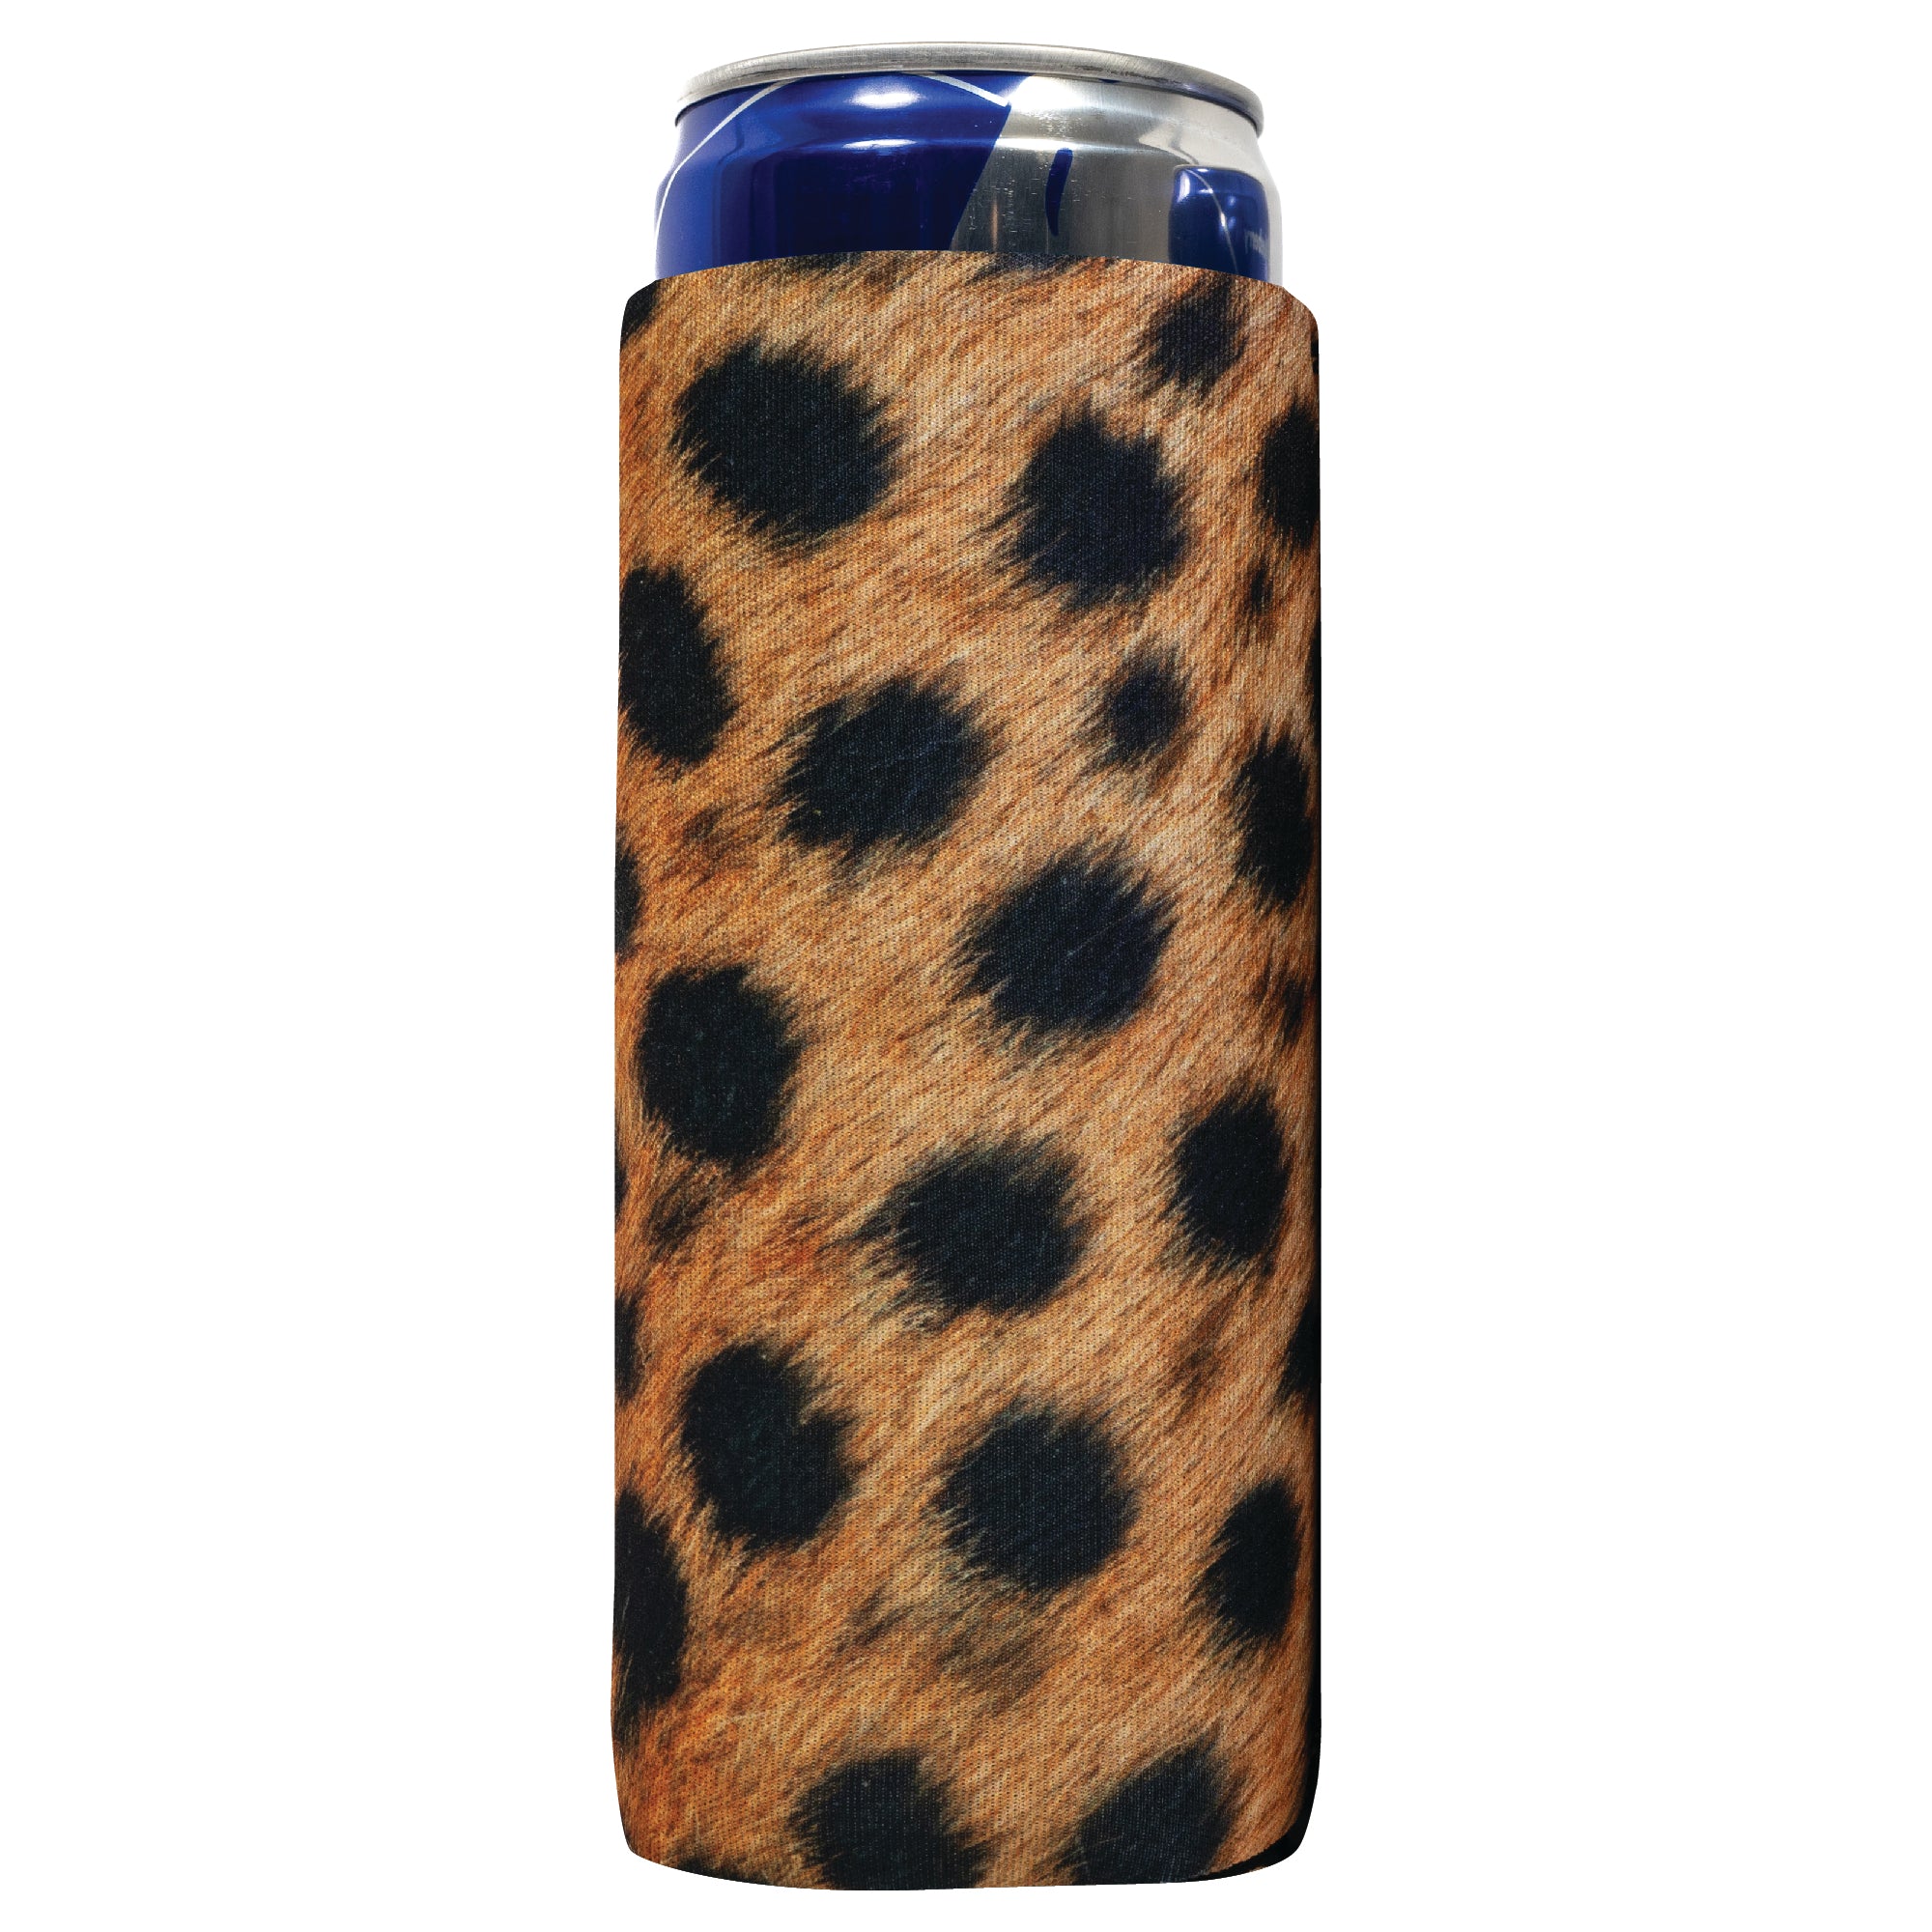 Neoprene Water Bottle Koozie 24 Ounce - Leopard Animal Print